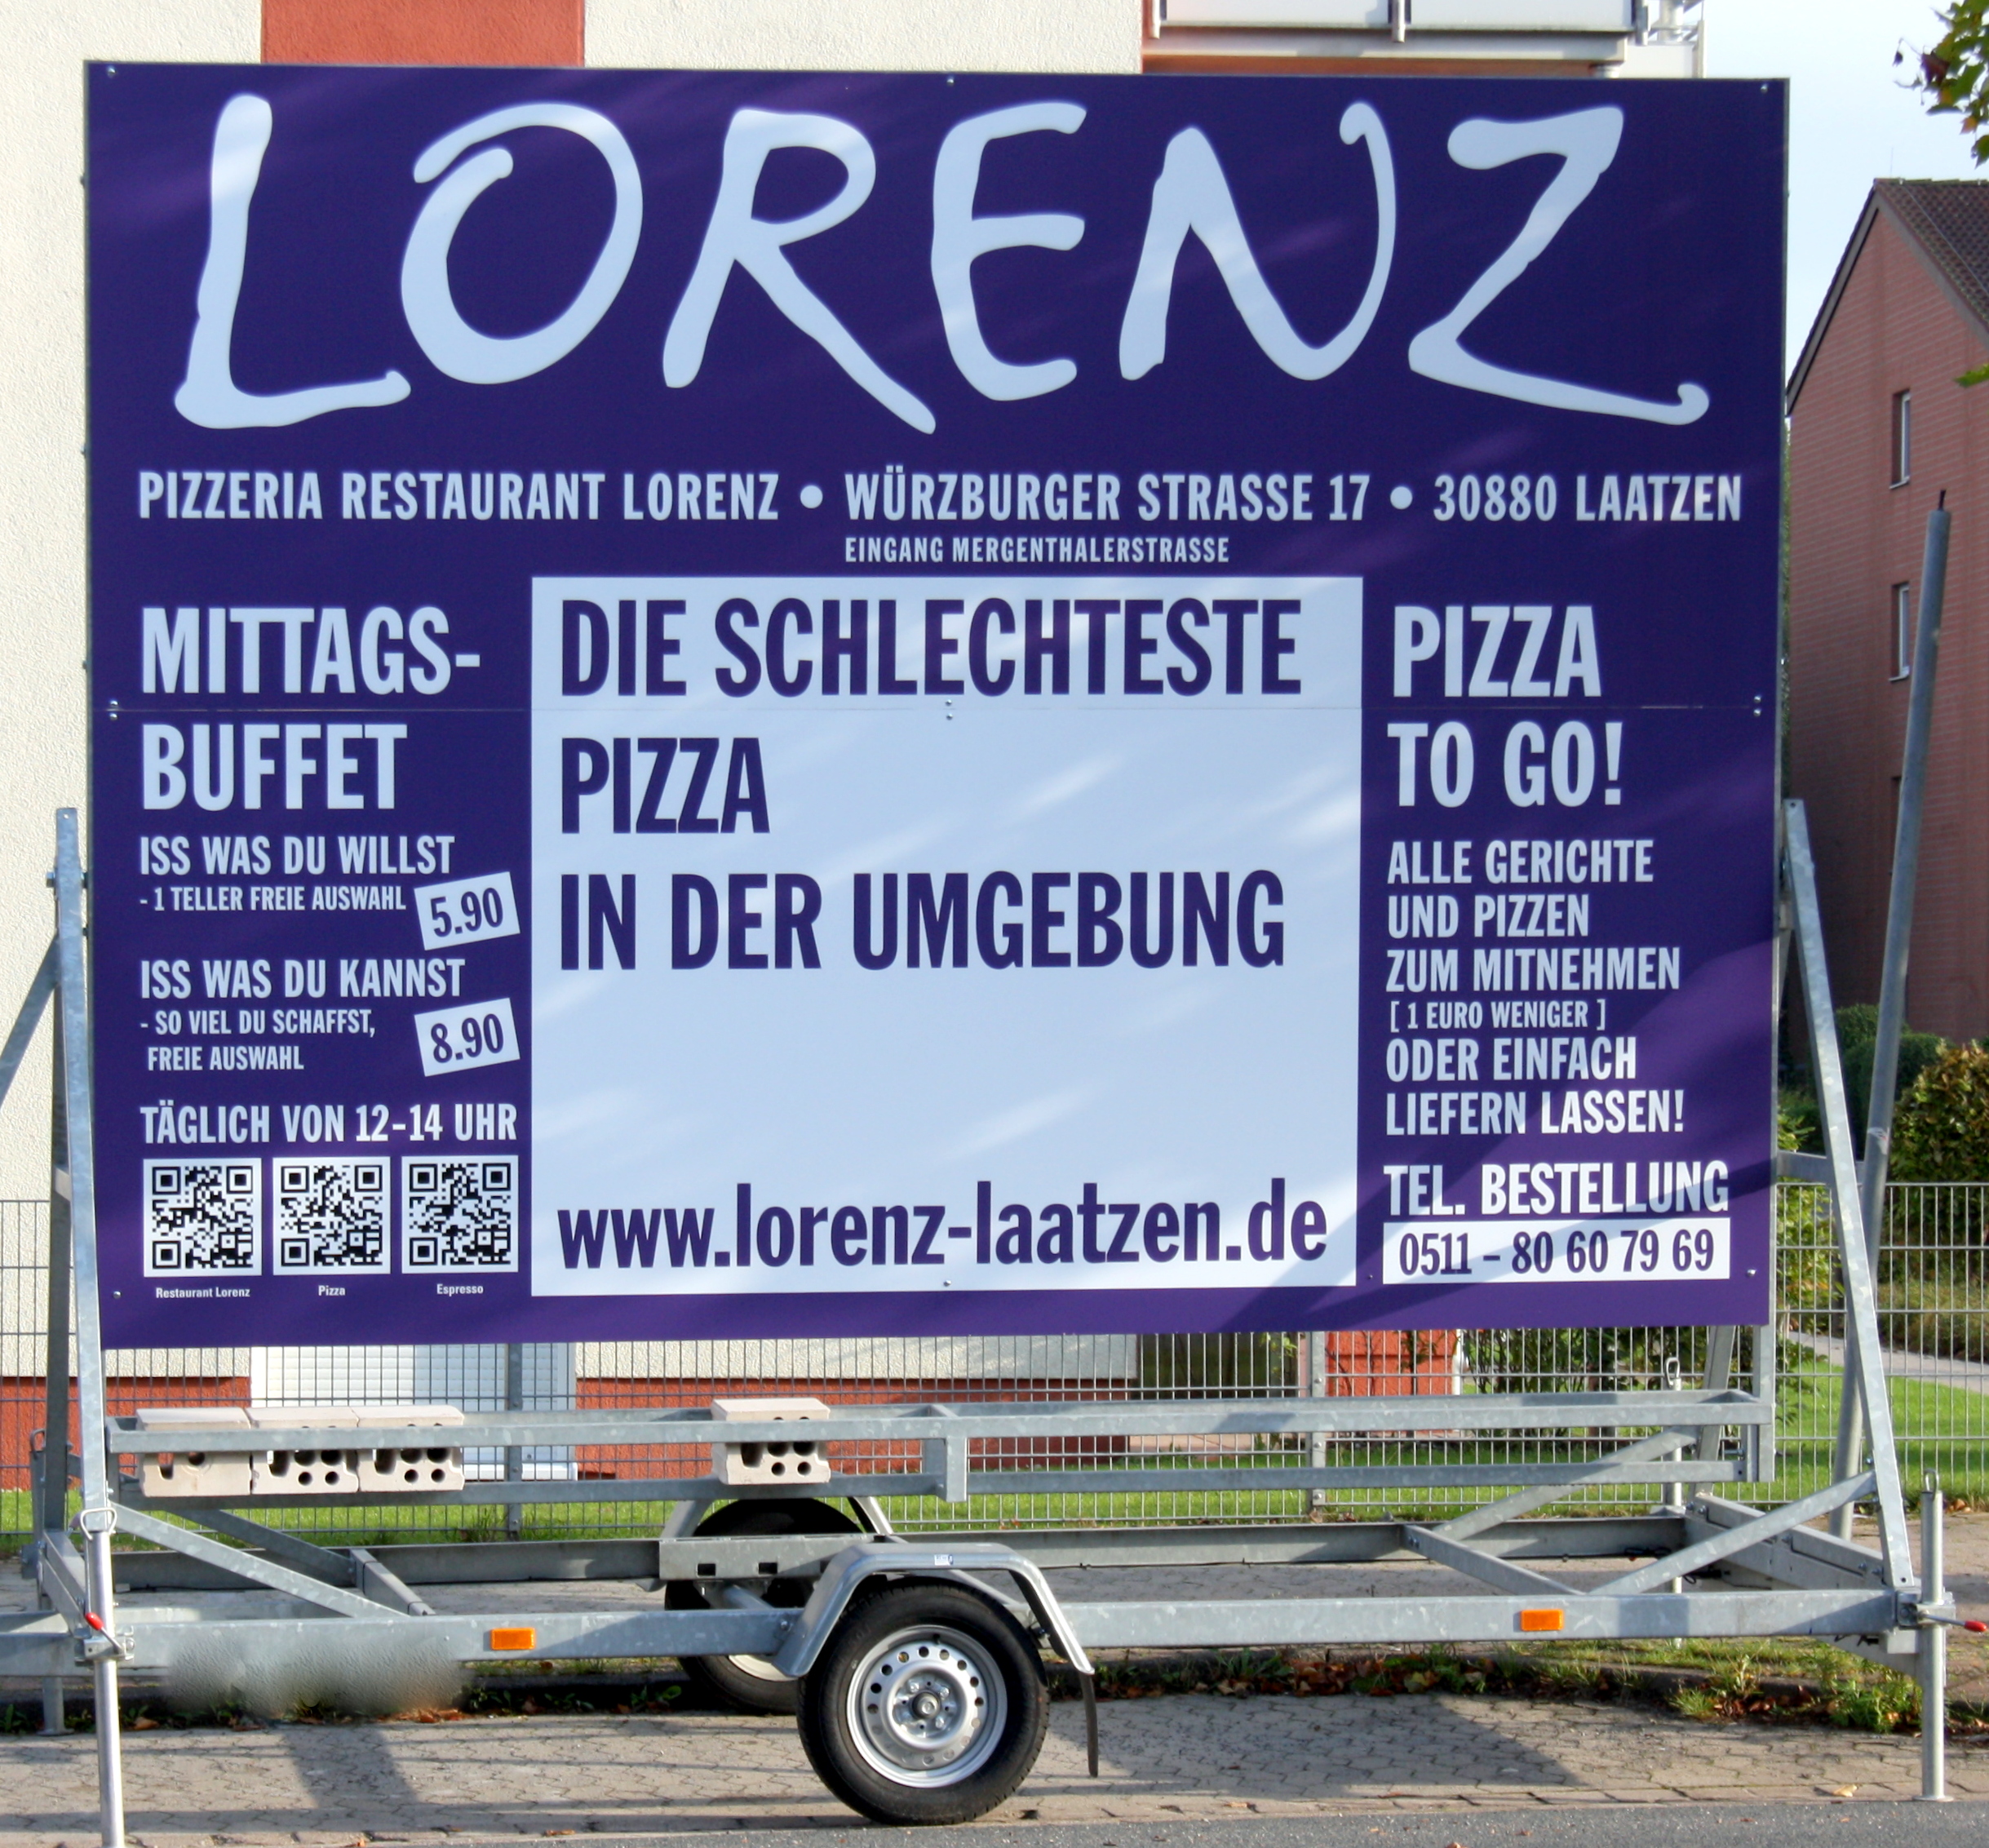 Lorenz, Laatzen - coole Werbung, die bestimmt Aufmerksamkeit erregt -